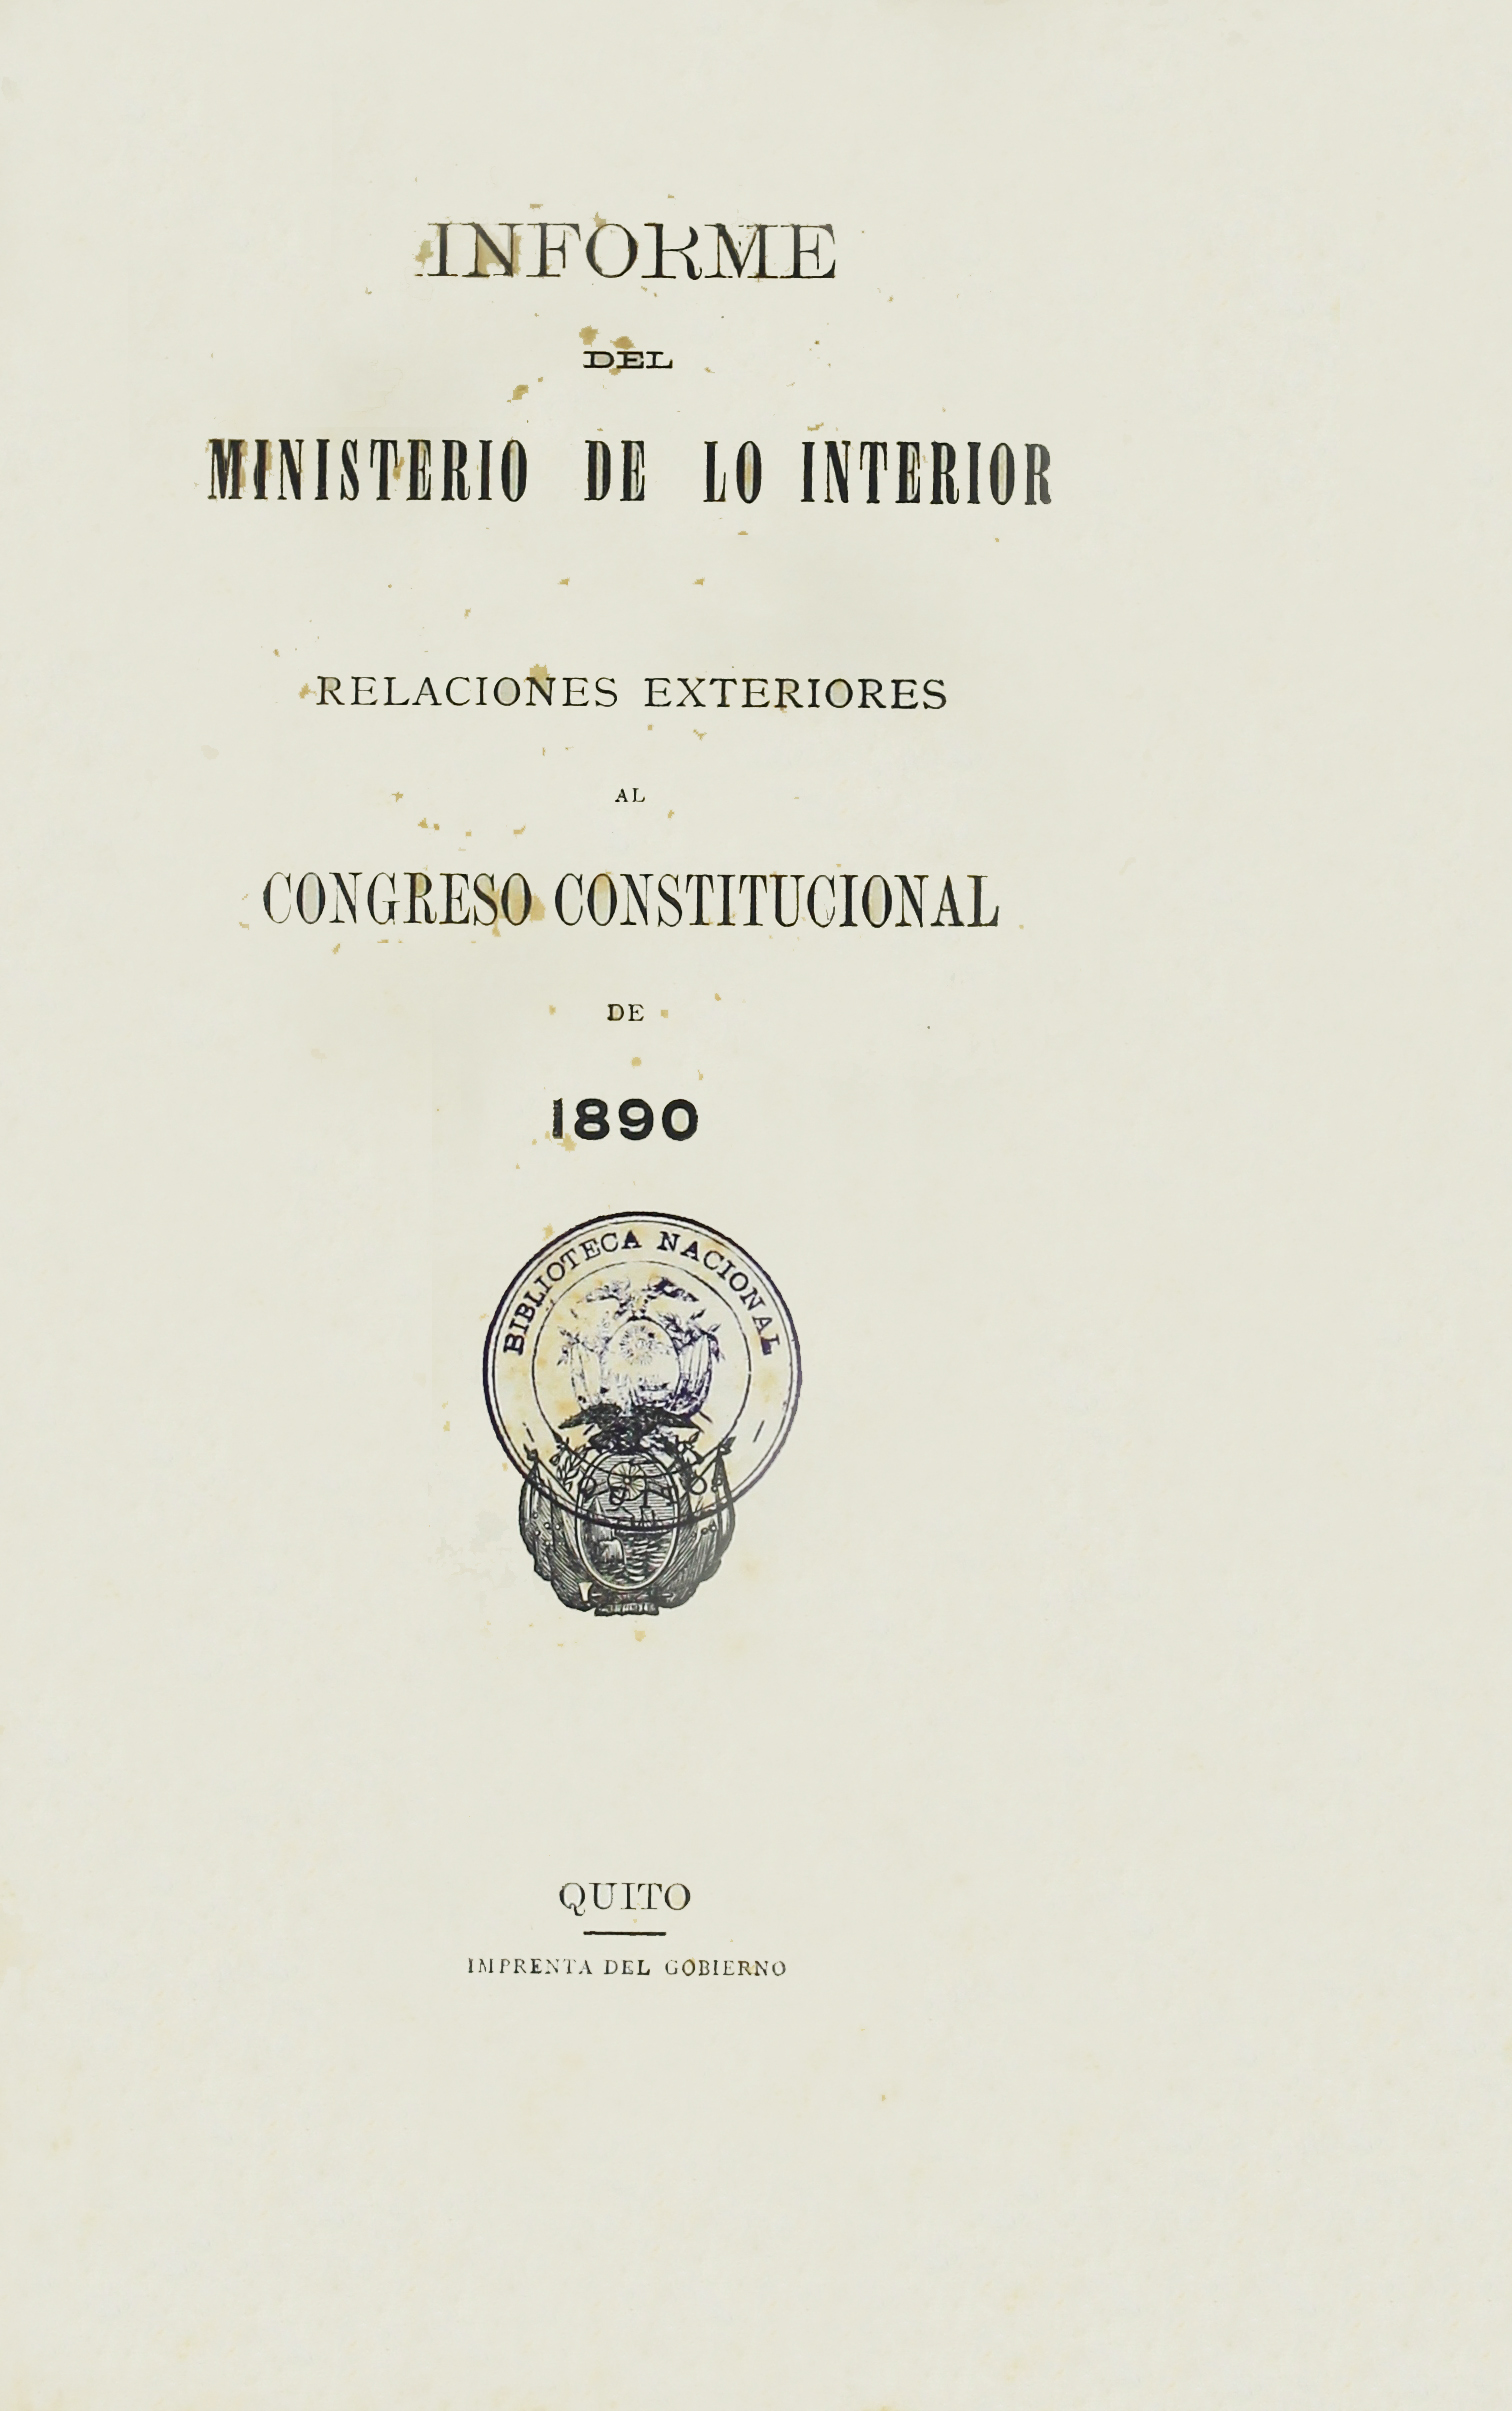 Informe del Ministerio de lo Interior y Relaciones Exteriores al Congreso Constitucional de 1890